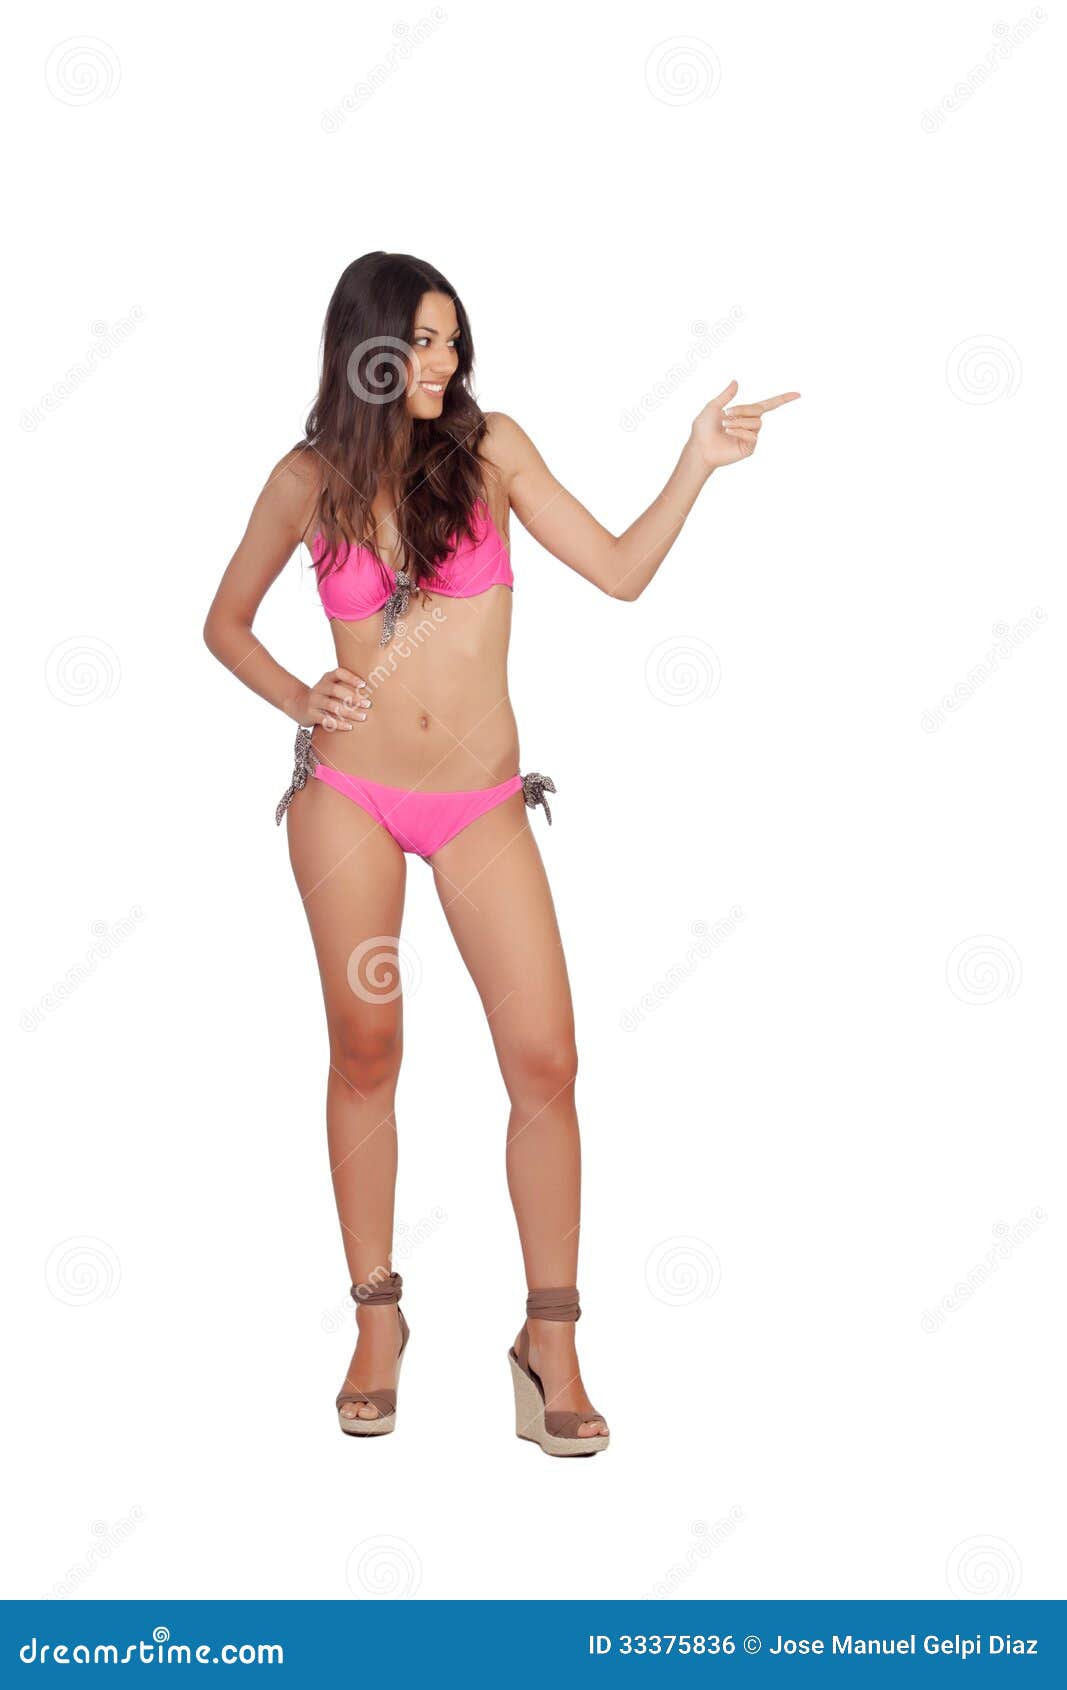 Attraktive Frau mit der rosa Badebekleidung, die etwas anzeigt. Attraktive Frau mit der rosa Badebekleidung, die etwas lokalisiert auf einem weißen Hintergrund anzeigt